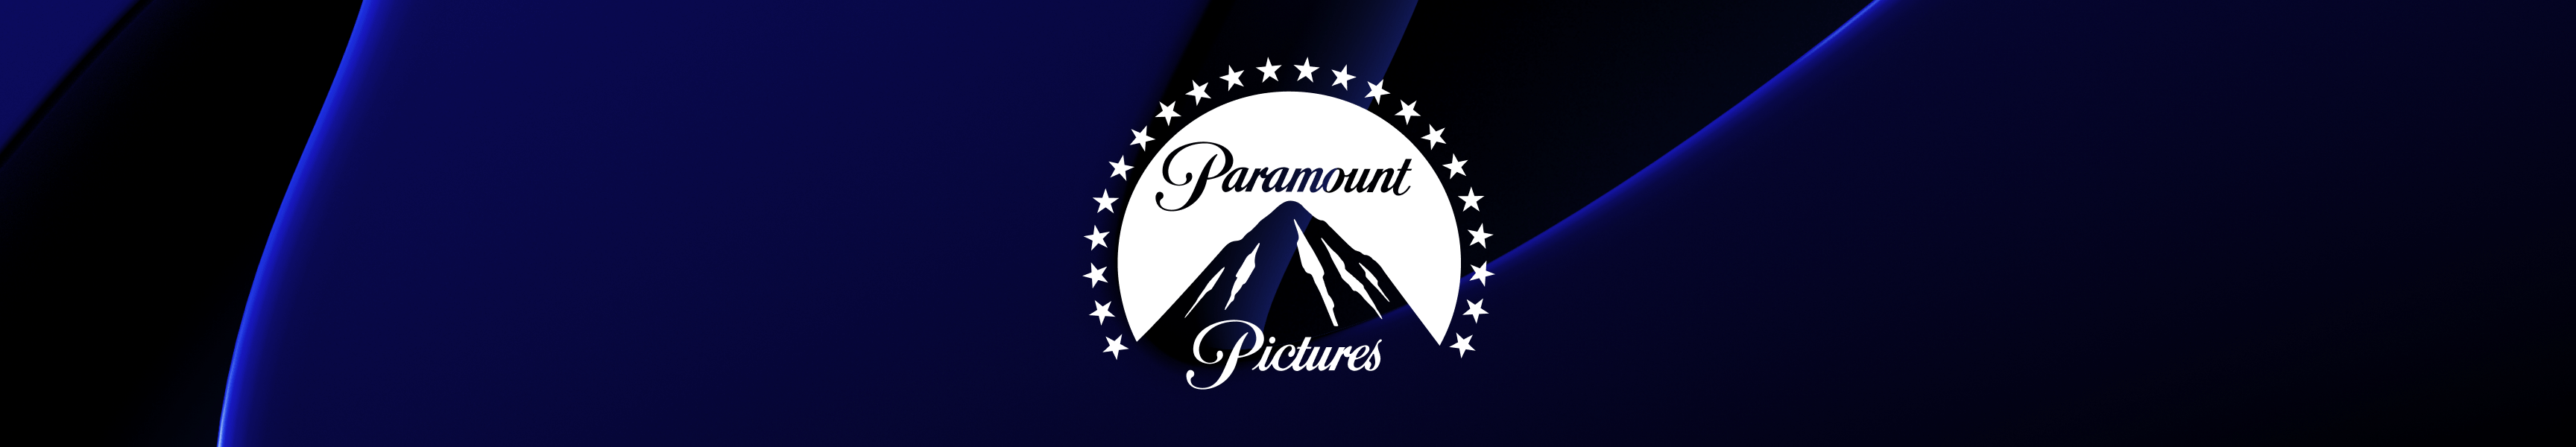 Paramount Pictures Hogar y oficina